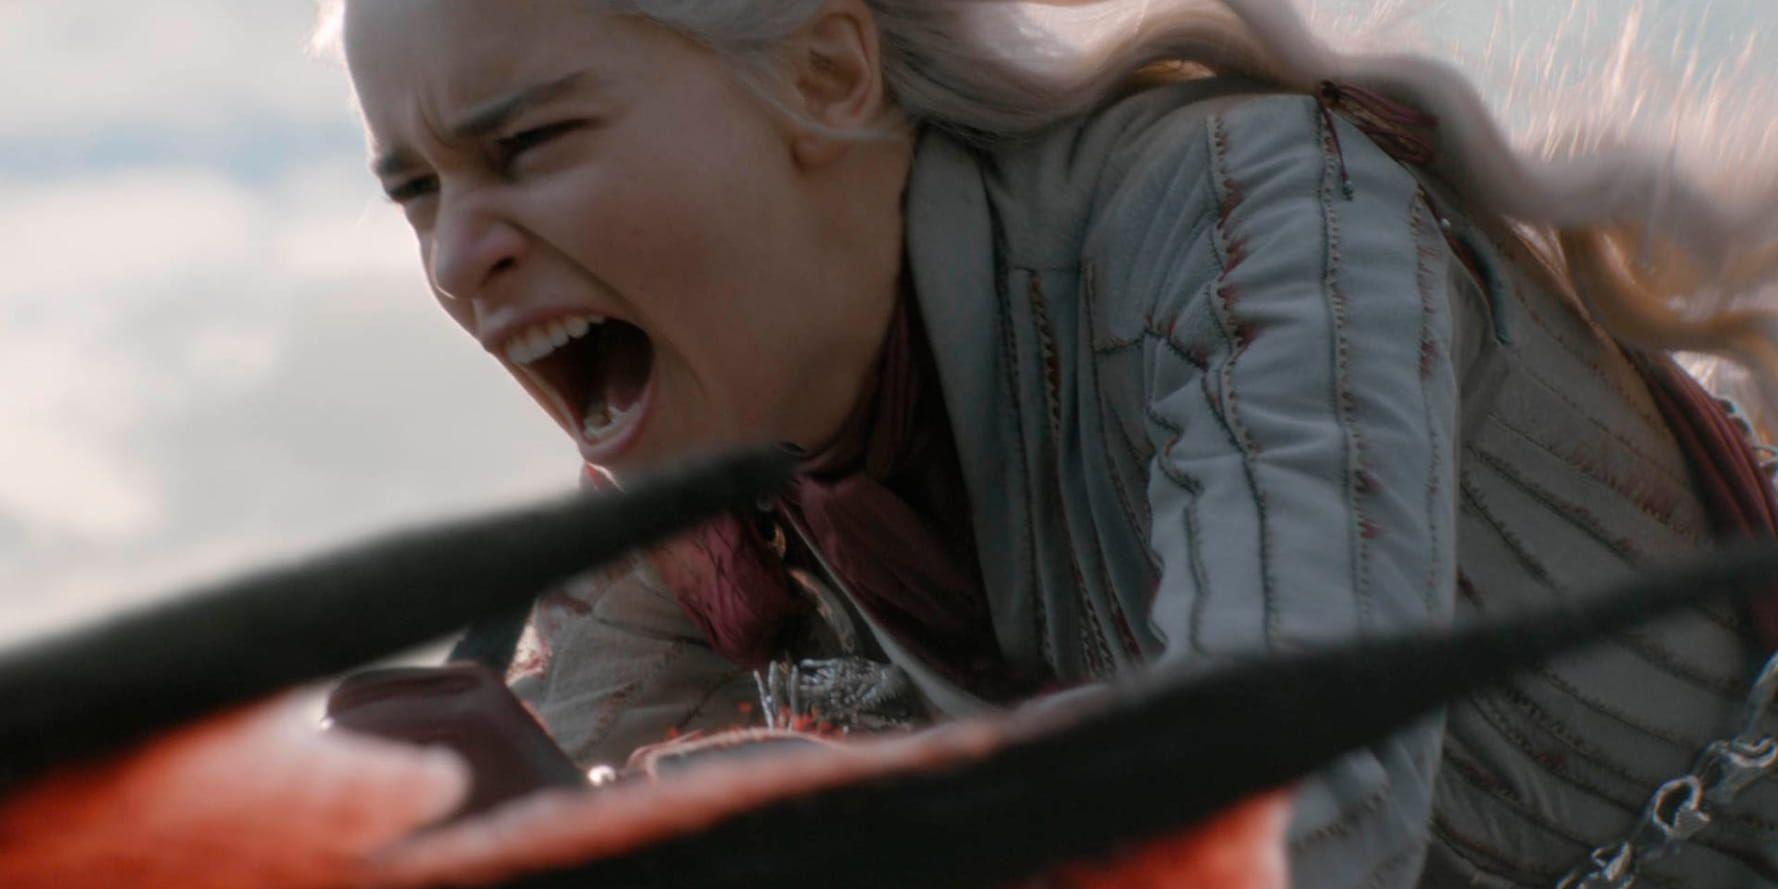 Rollfiguren Daenerys i "Game of thrones" spelas av Emilia Clarke. Pressbild.